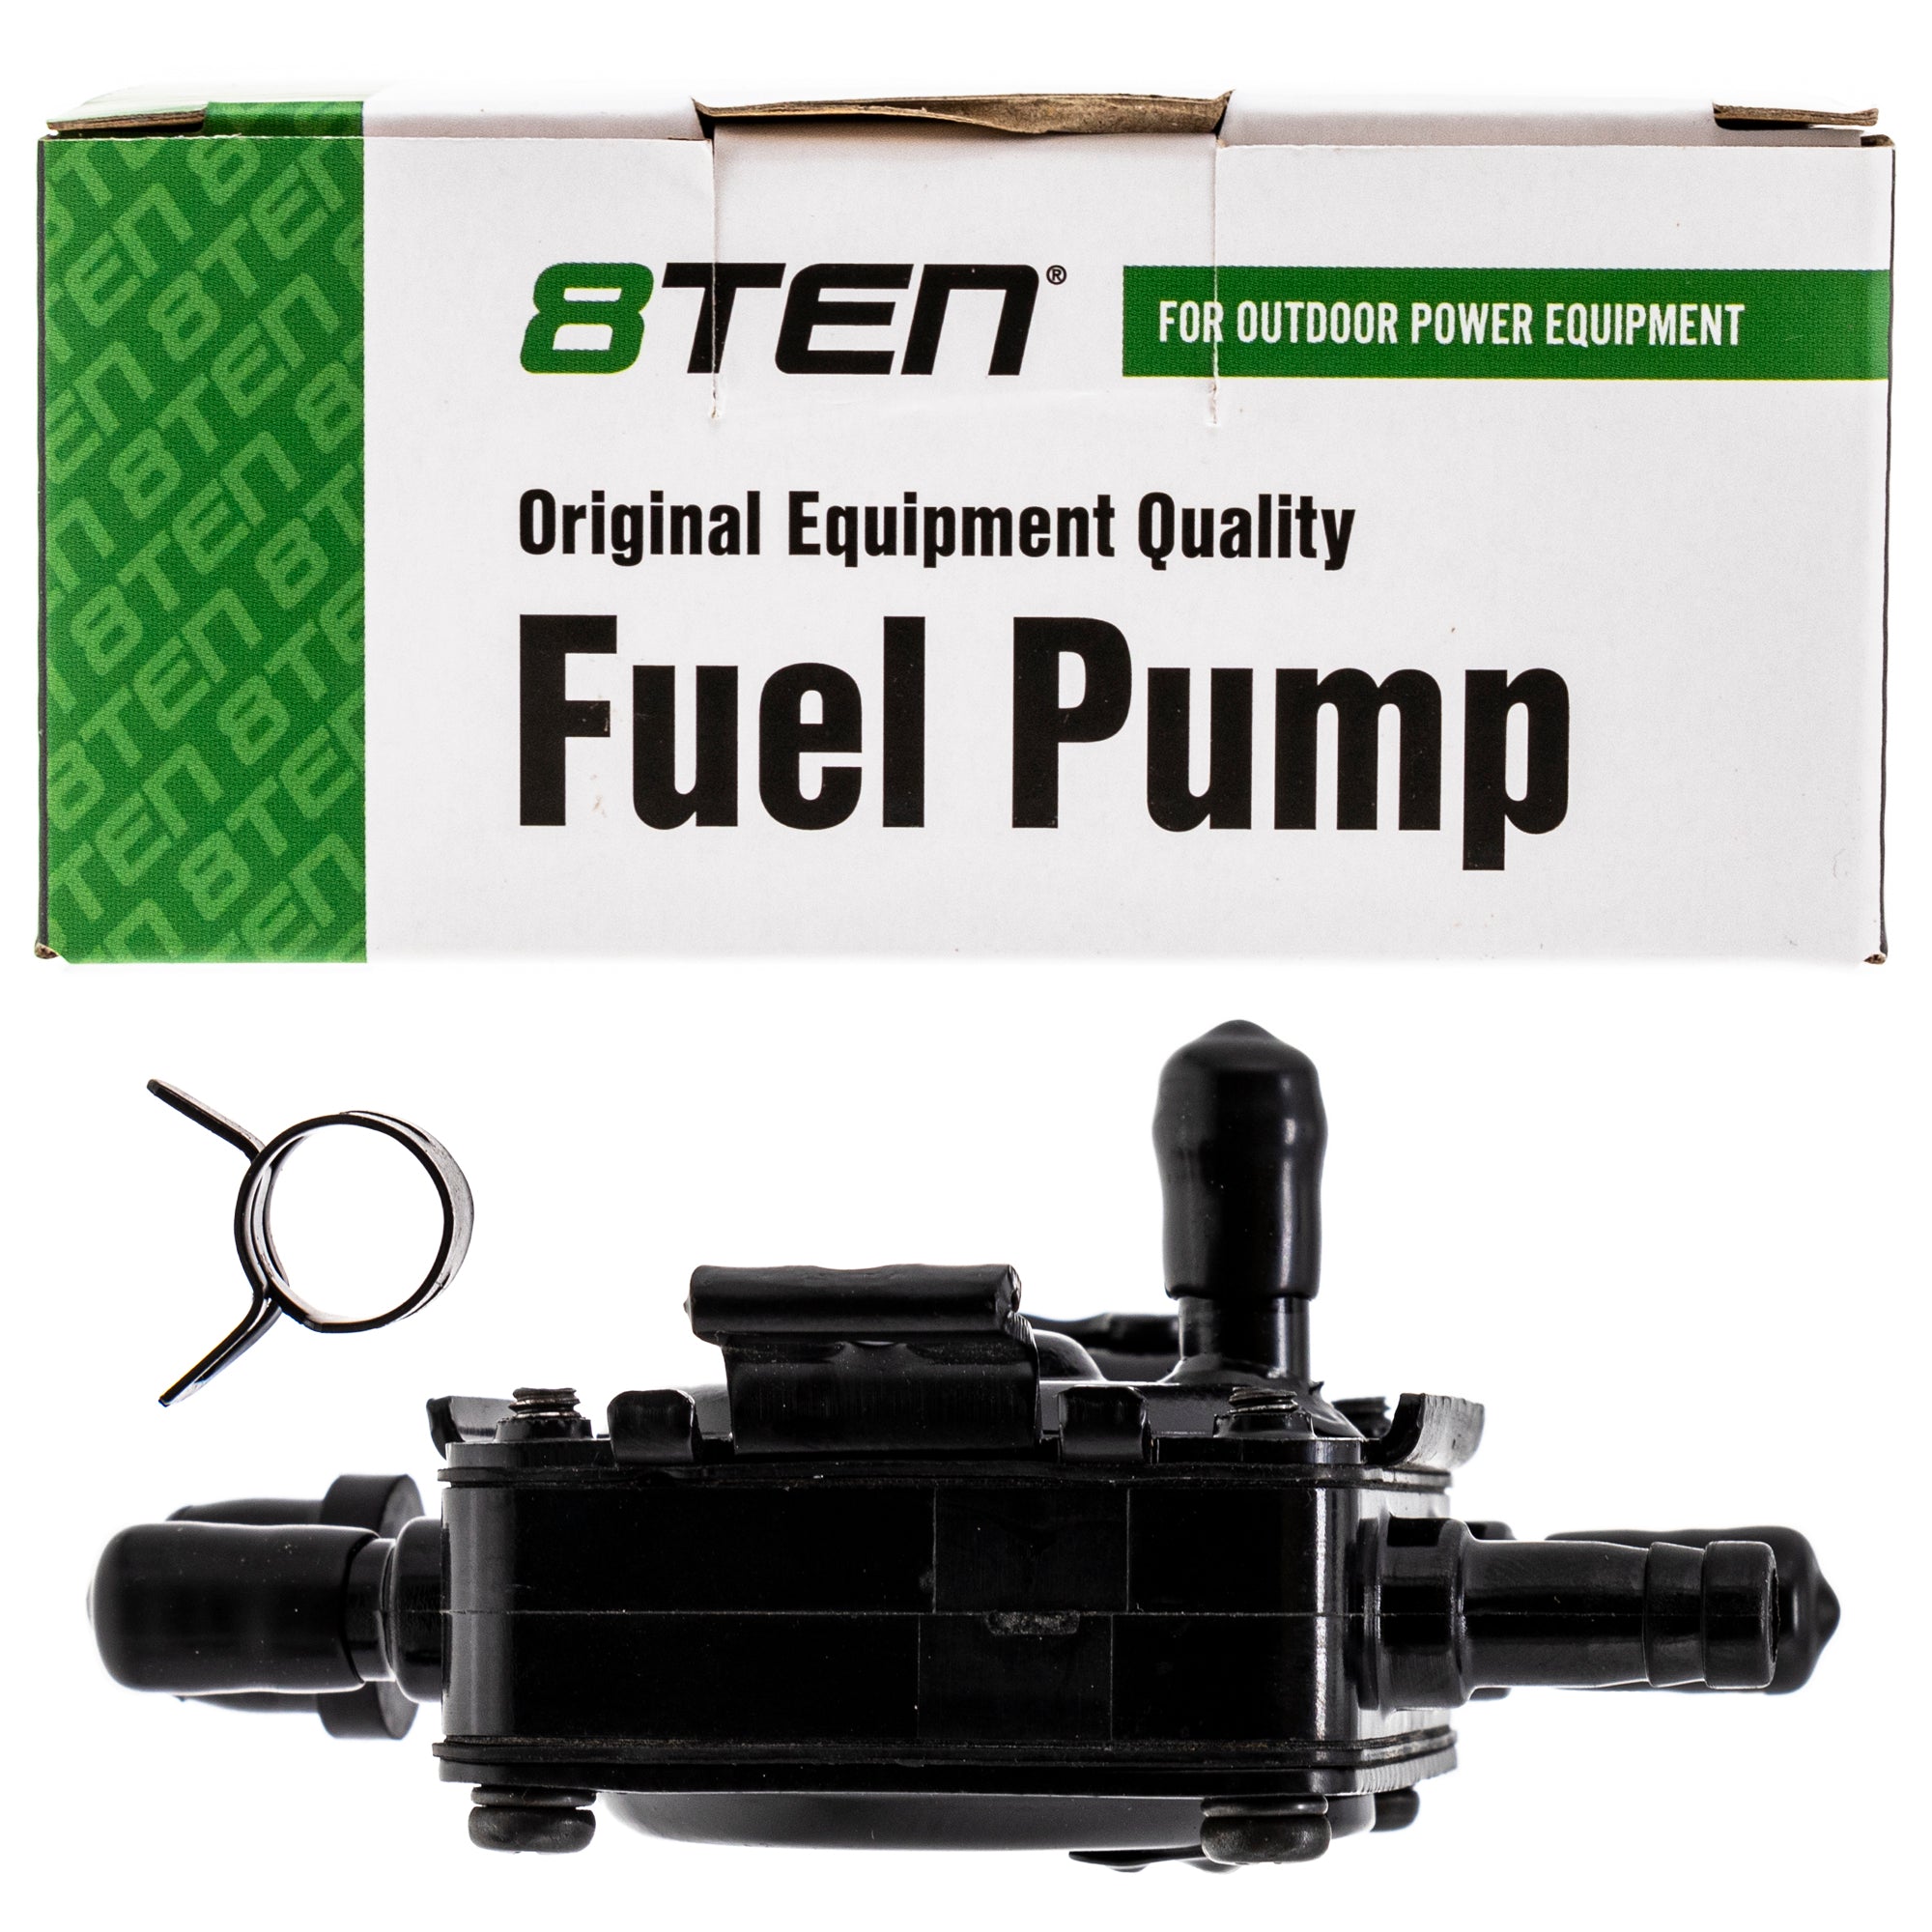 Fuel Pump Kit for Toro Cummins 312-8 520-H 416-8 310-8 Tractors